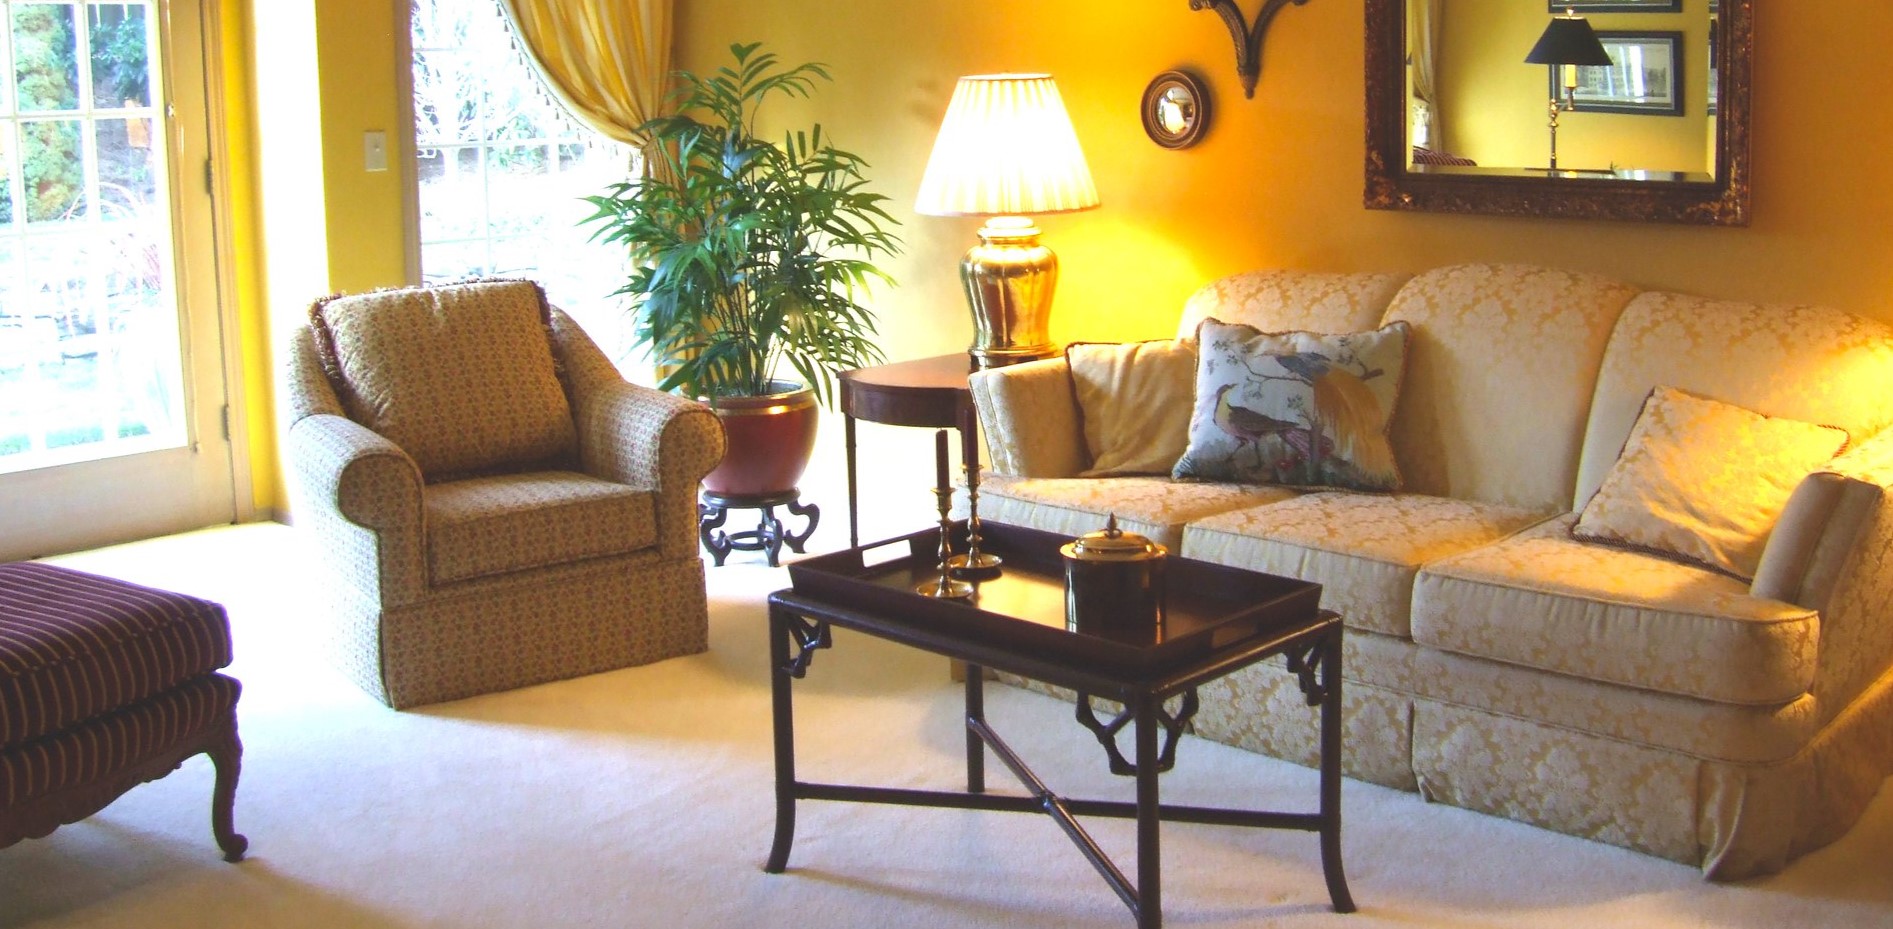 Горшок с комнатным растением можно поставить в гостиной возле кресла